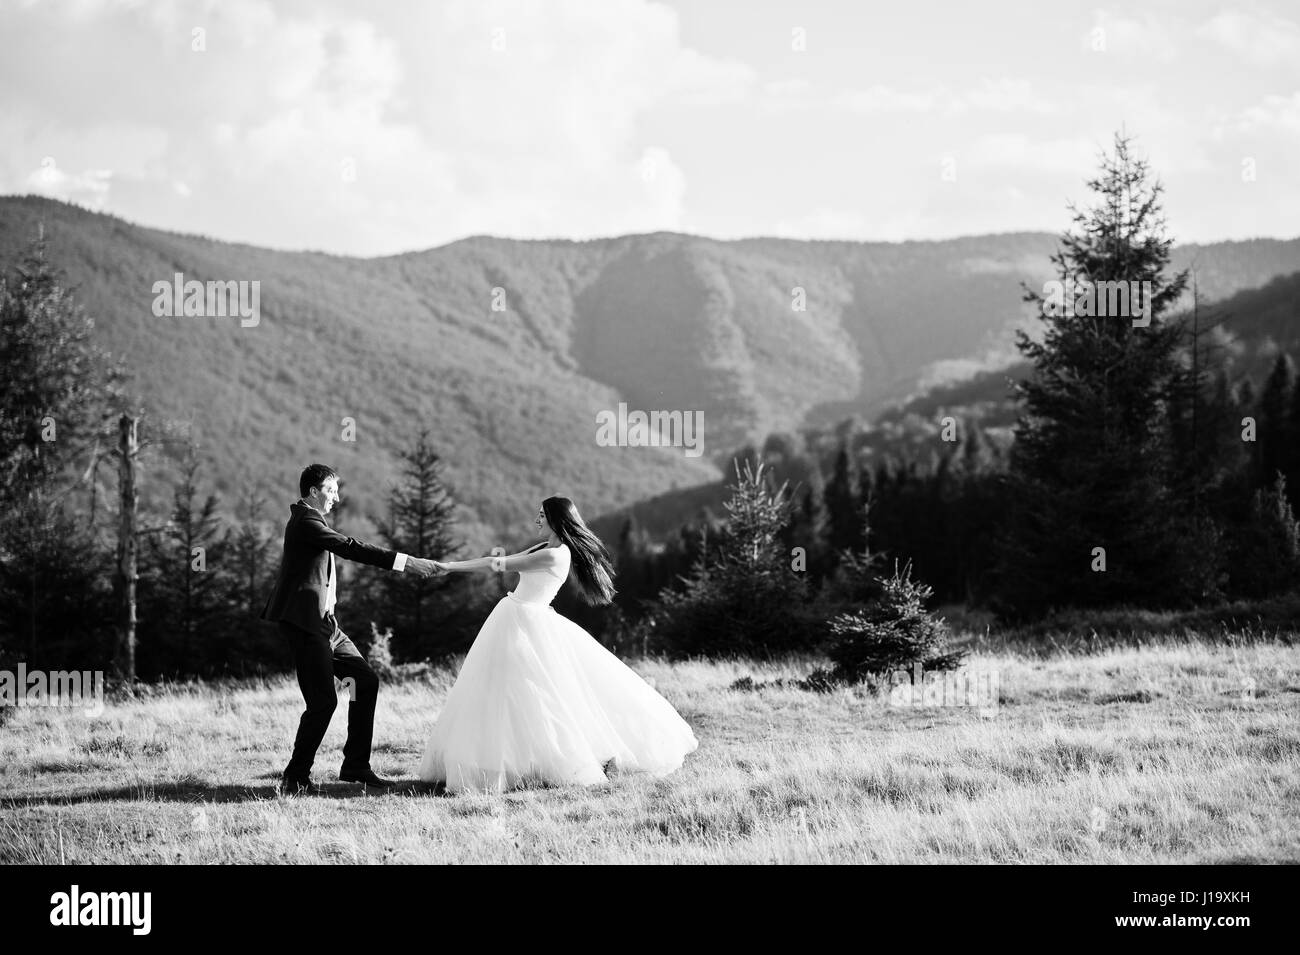 Lovely wedding couple at amazing landscapes of Carpathian mountains. Stock Photo